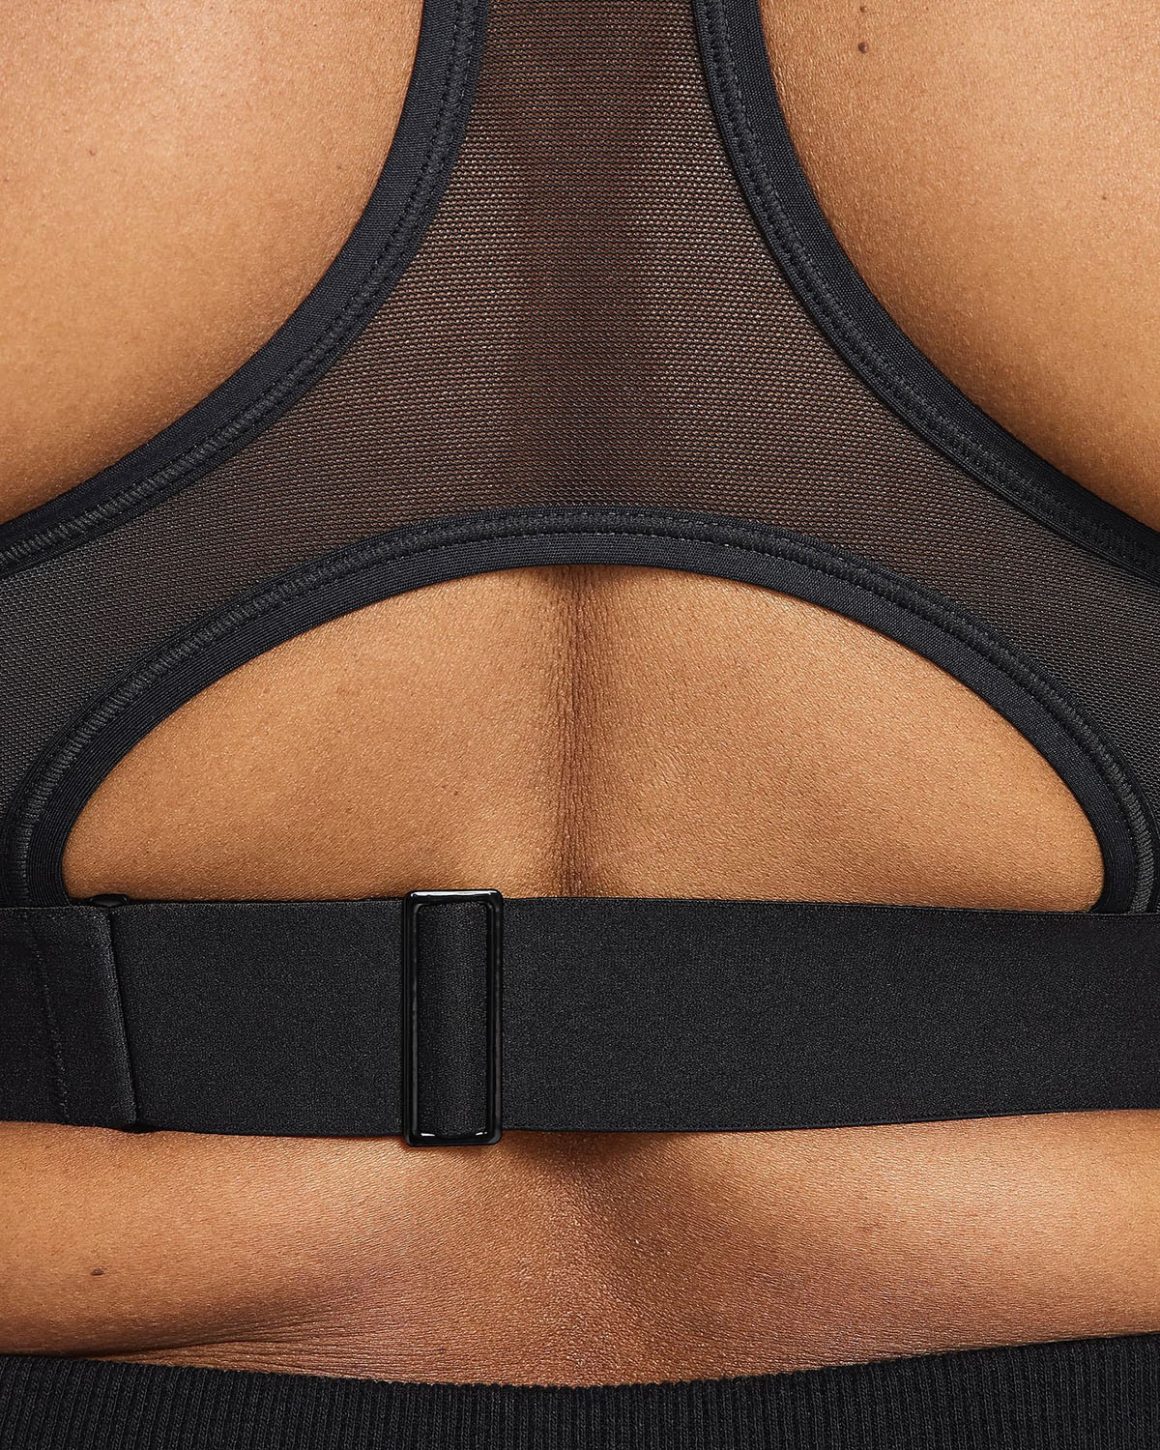 Nike推出了一款专门为哺乳母亲设计的运动胸罩